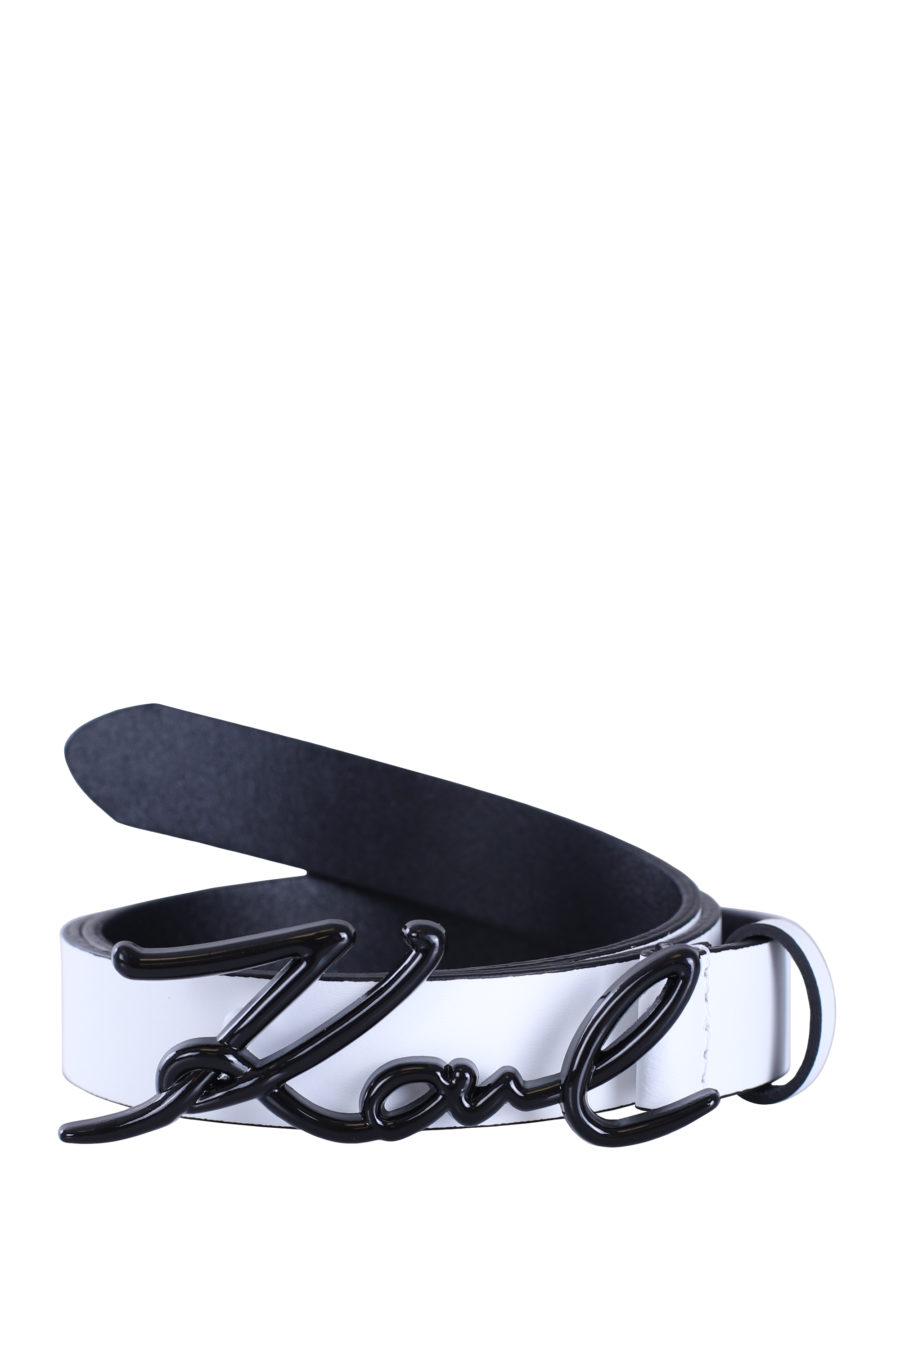 Cinturón blanco "Signature" hebilla negra - IMG 9004